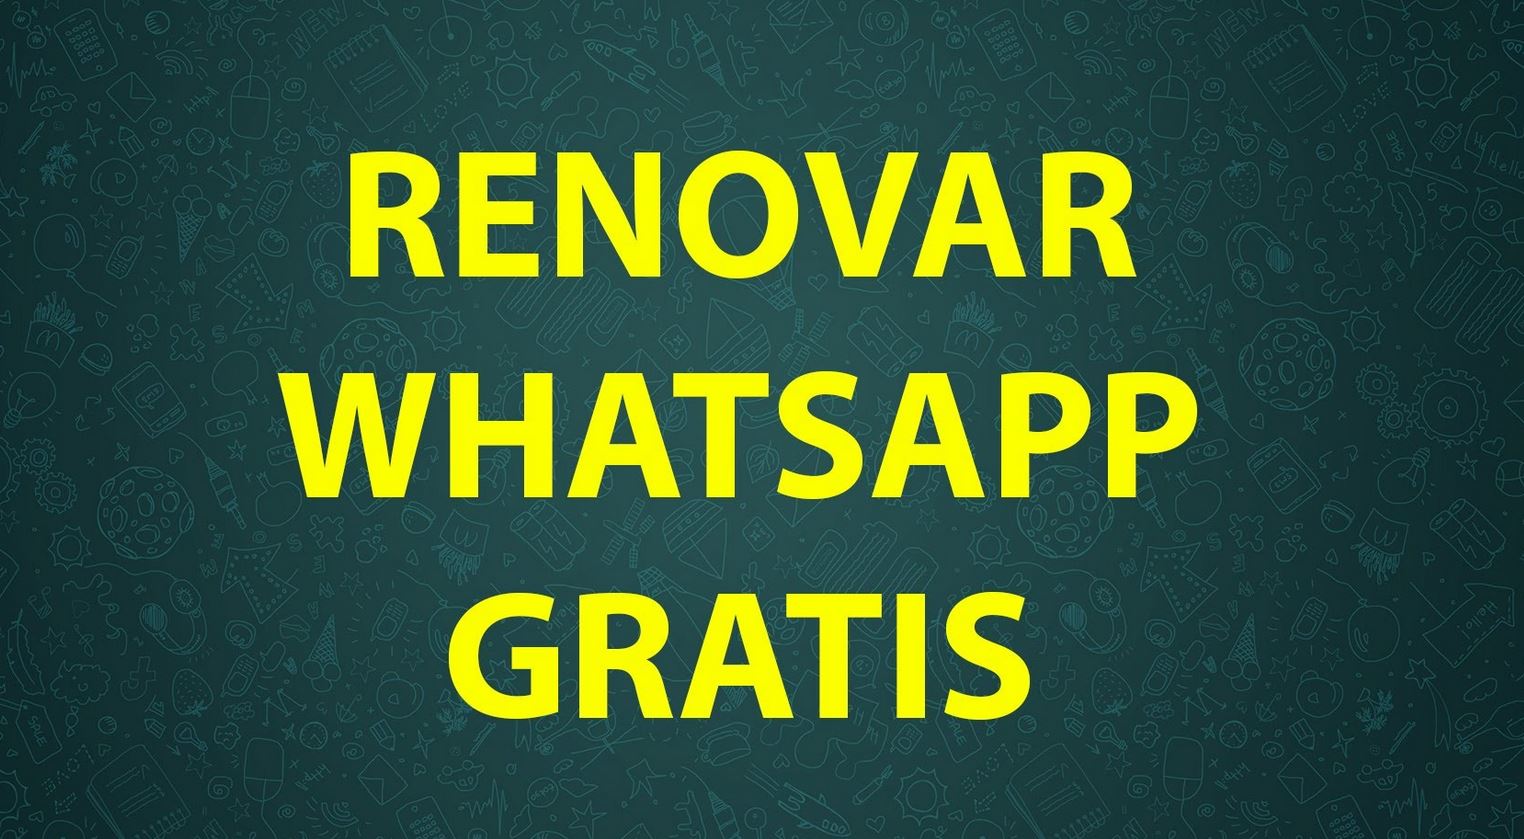 Renovar WhatsApp gratis